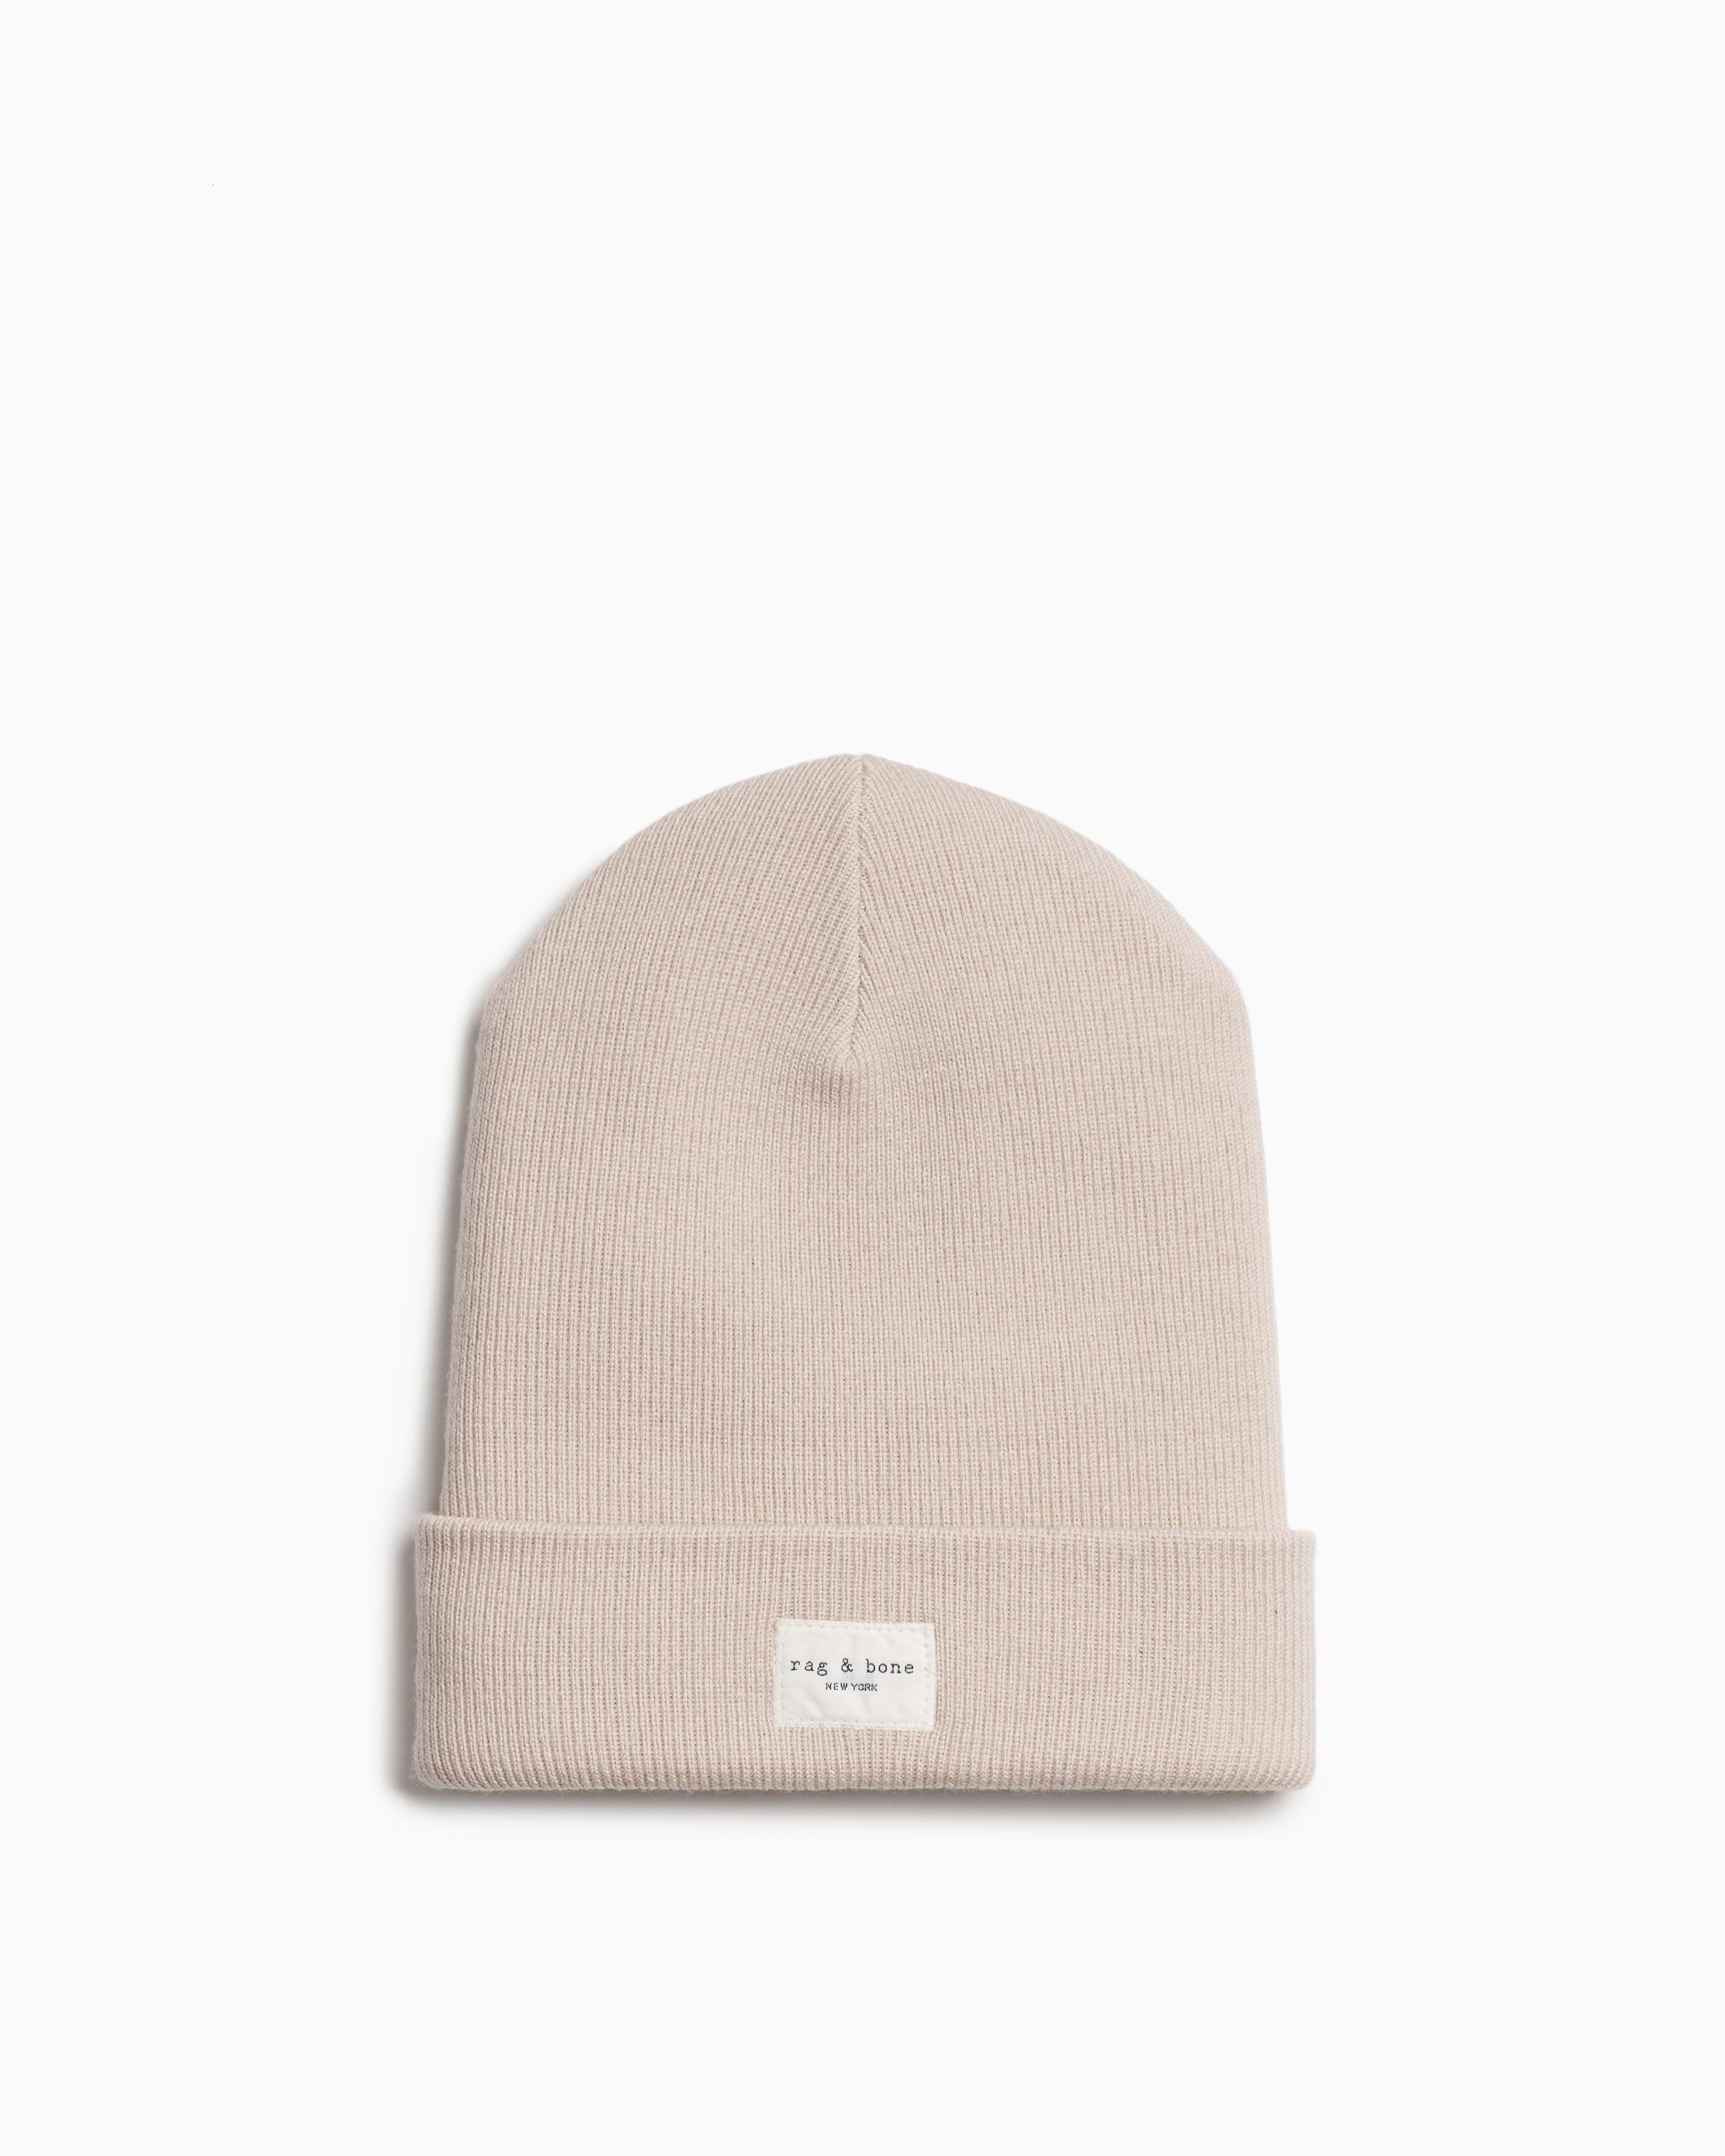 Addison Beanie
Wool Hat - 1